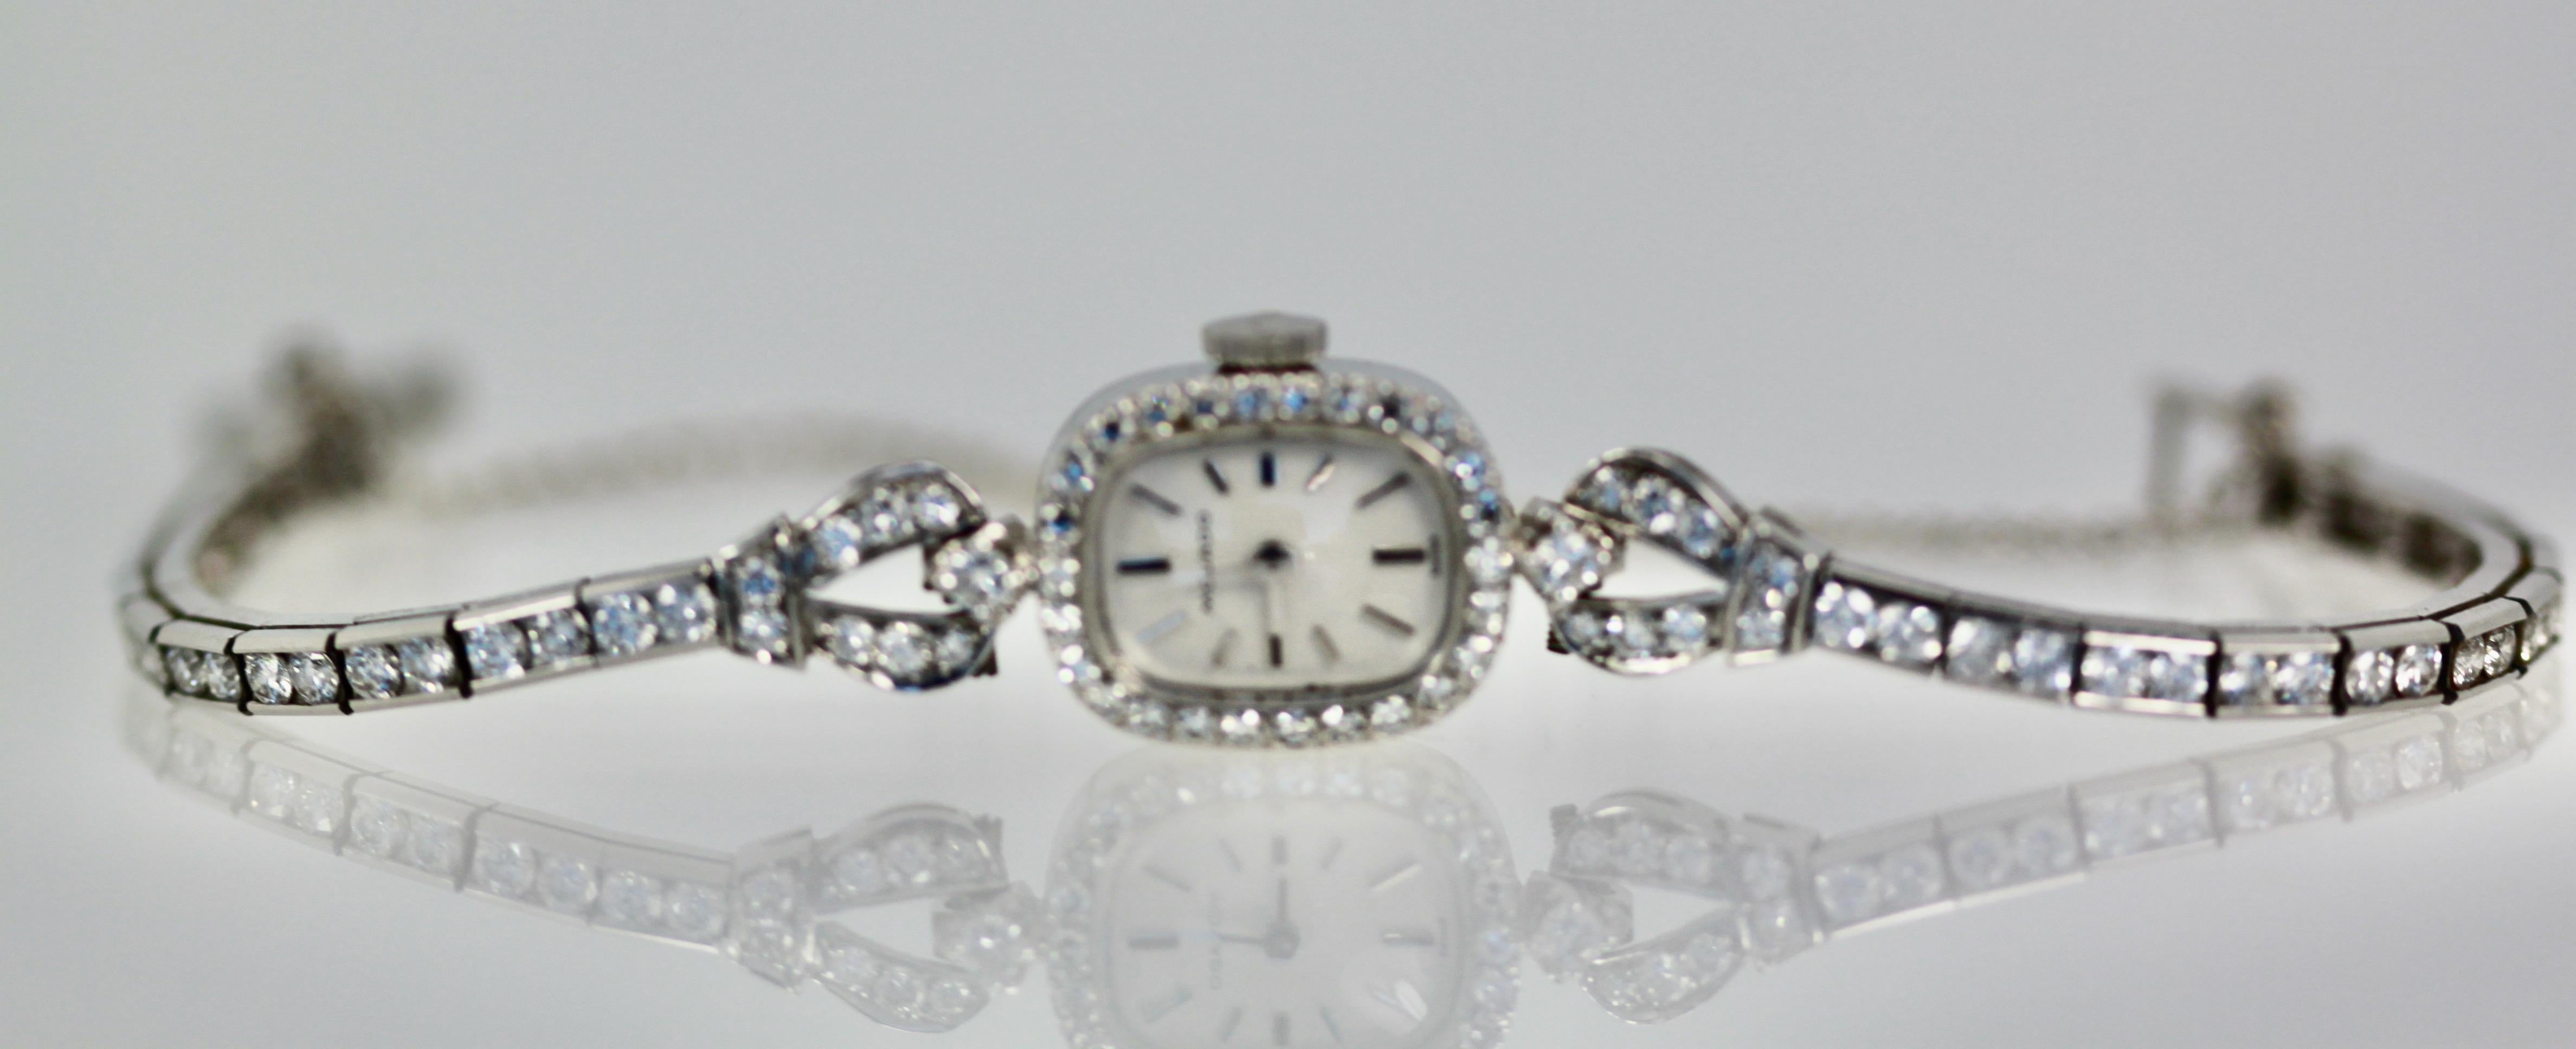 Cette ravissante montre-bracelet en diamants est fabriquée par Movado, une grande maison horlogère.  Cette montre vient de revenir de chez mon expert horloger pour être nettoyée et vérifier le bon fonctionnement des pièces.  L'intérieur de cette